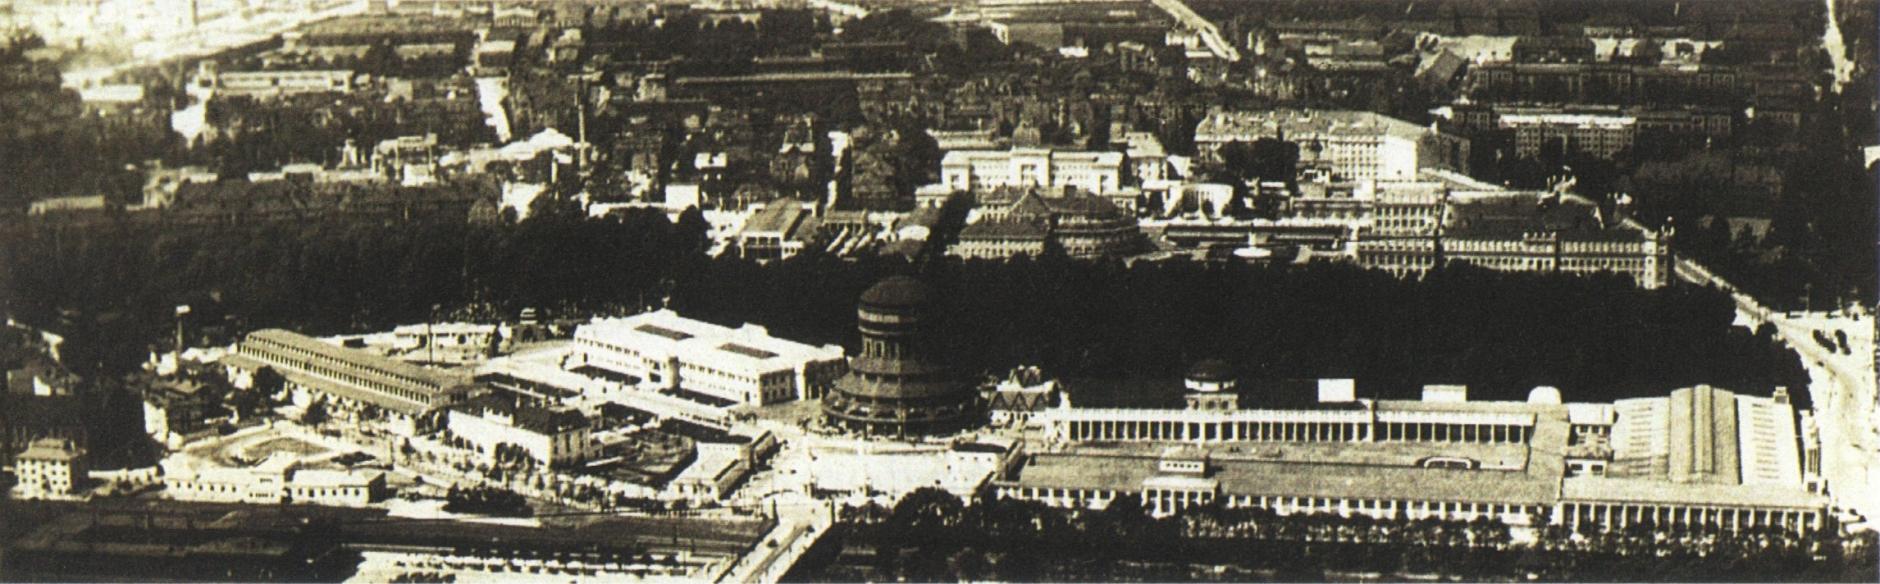 (1929) Powszechna Wystawa Krajowa. Widok z lotu ptaka na główny teren wystawowy.